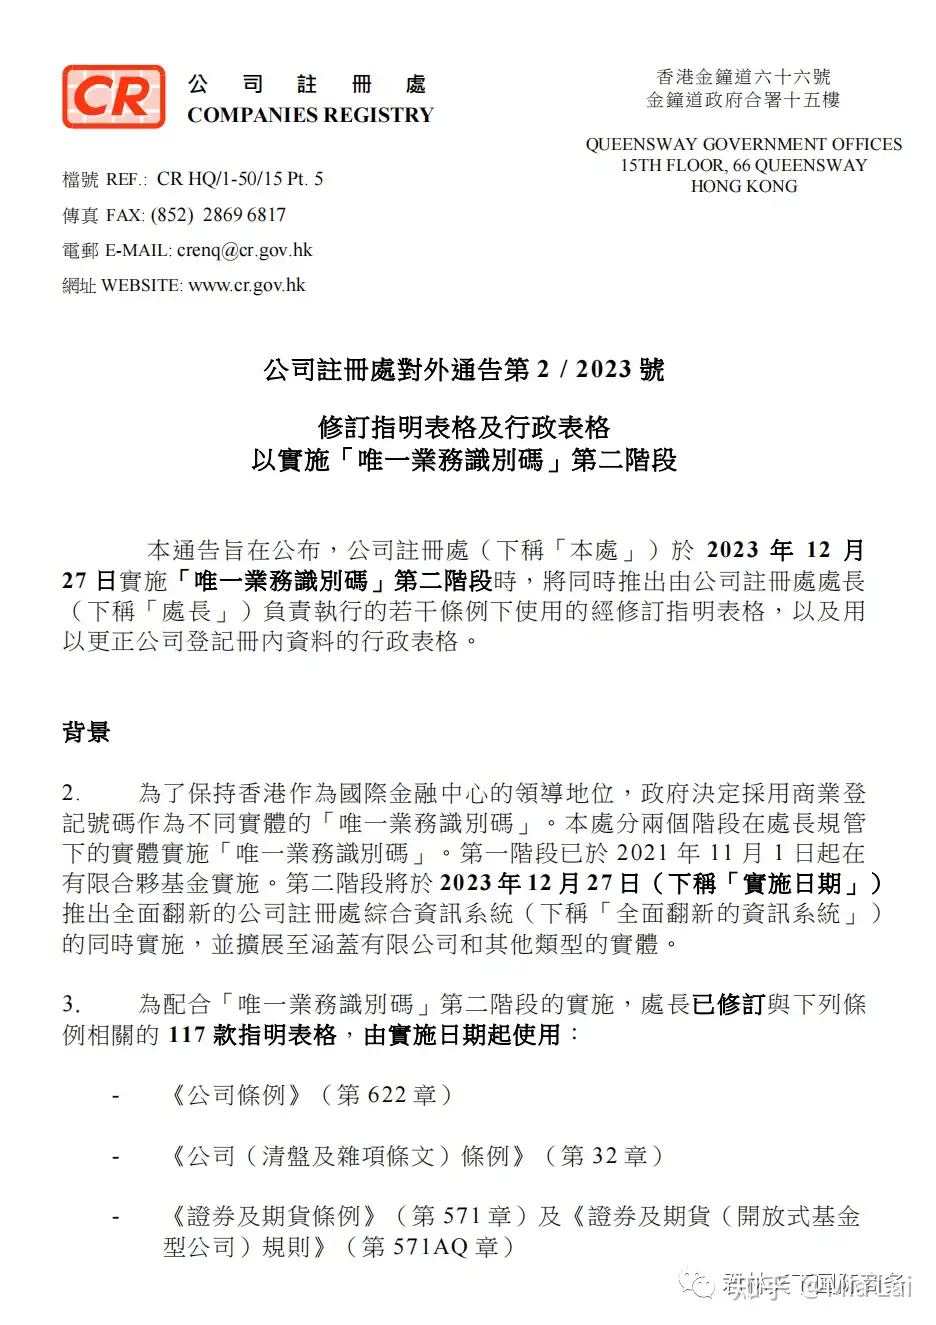 MI M №A 南方占領 香港 カバー 昭和切手 4種貼 消印香港、、4、